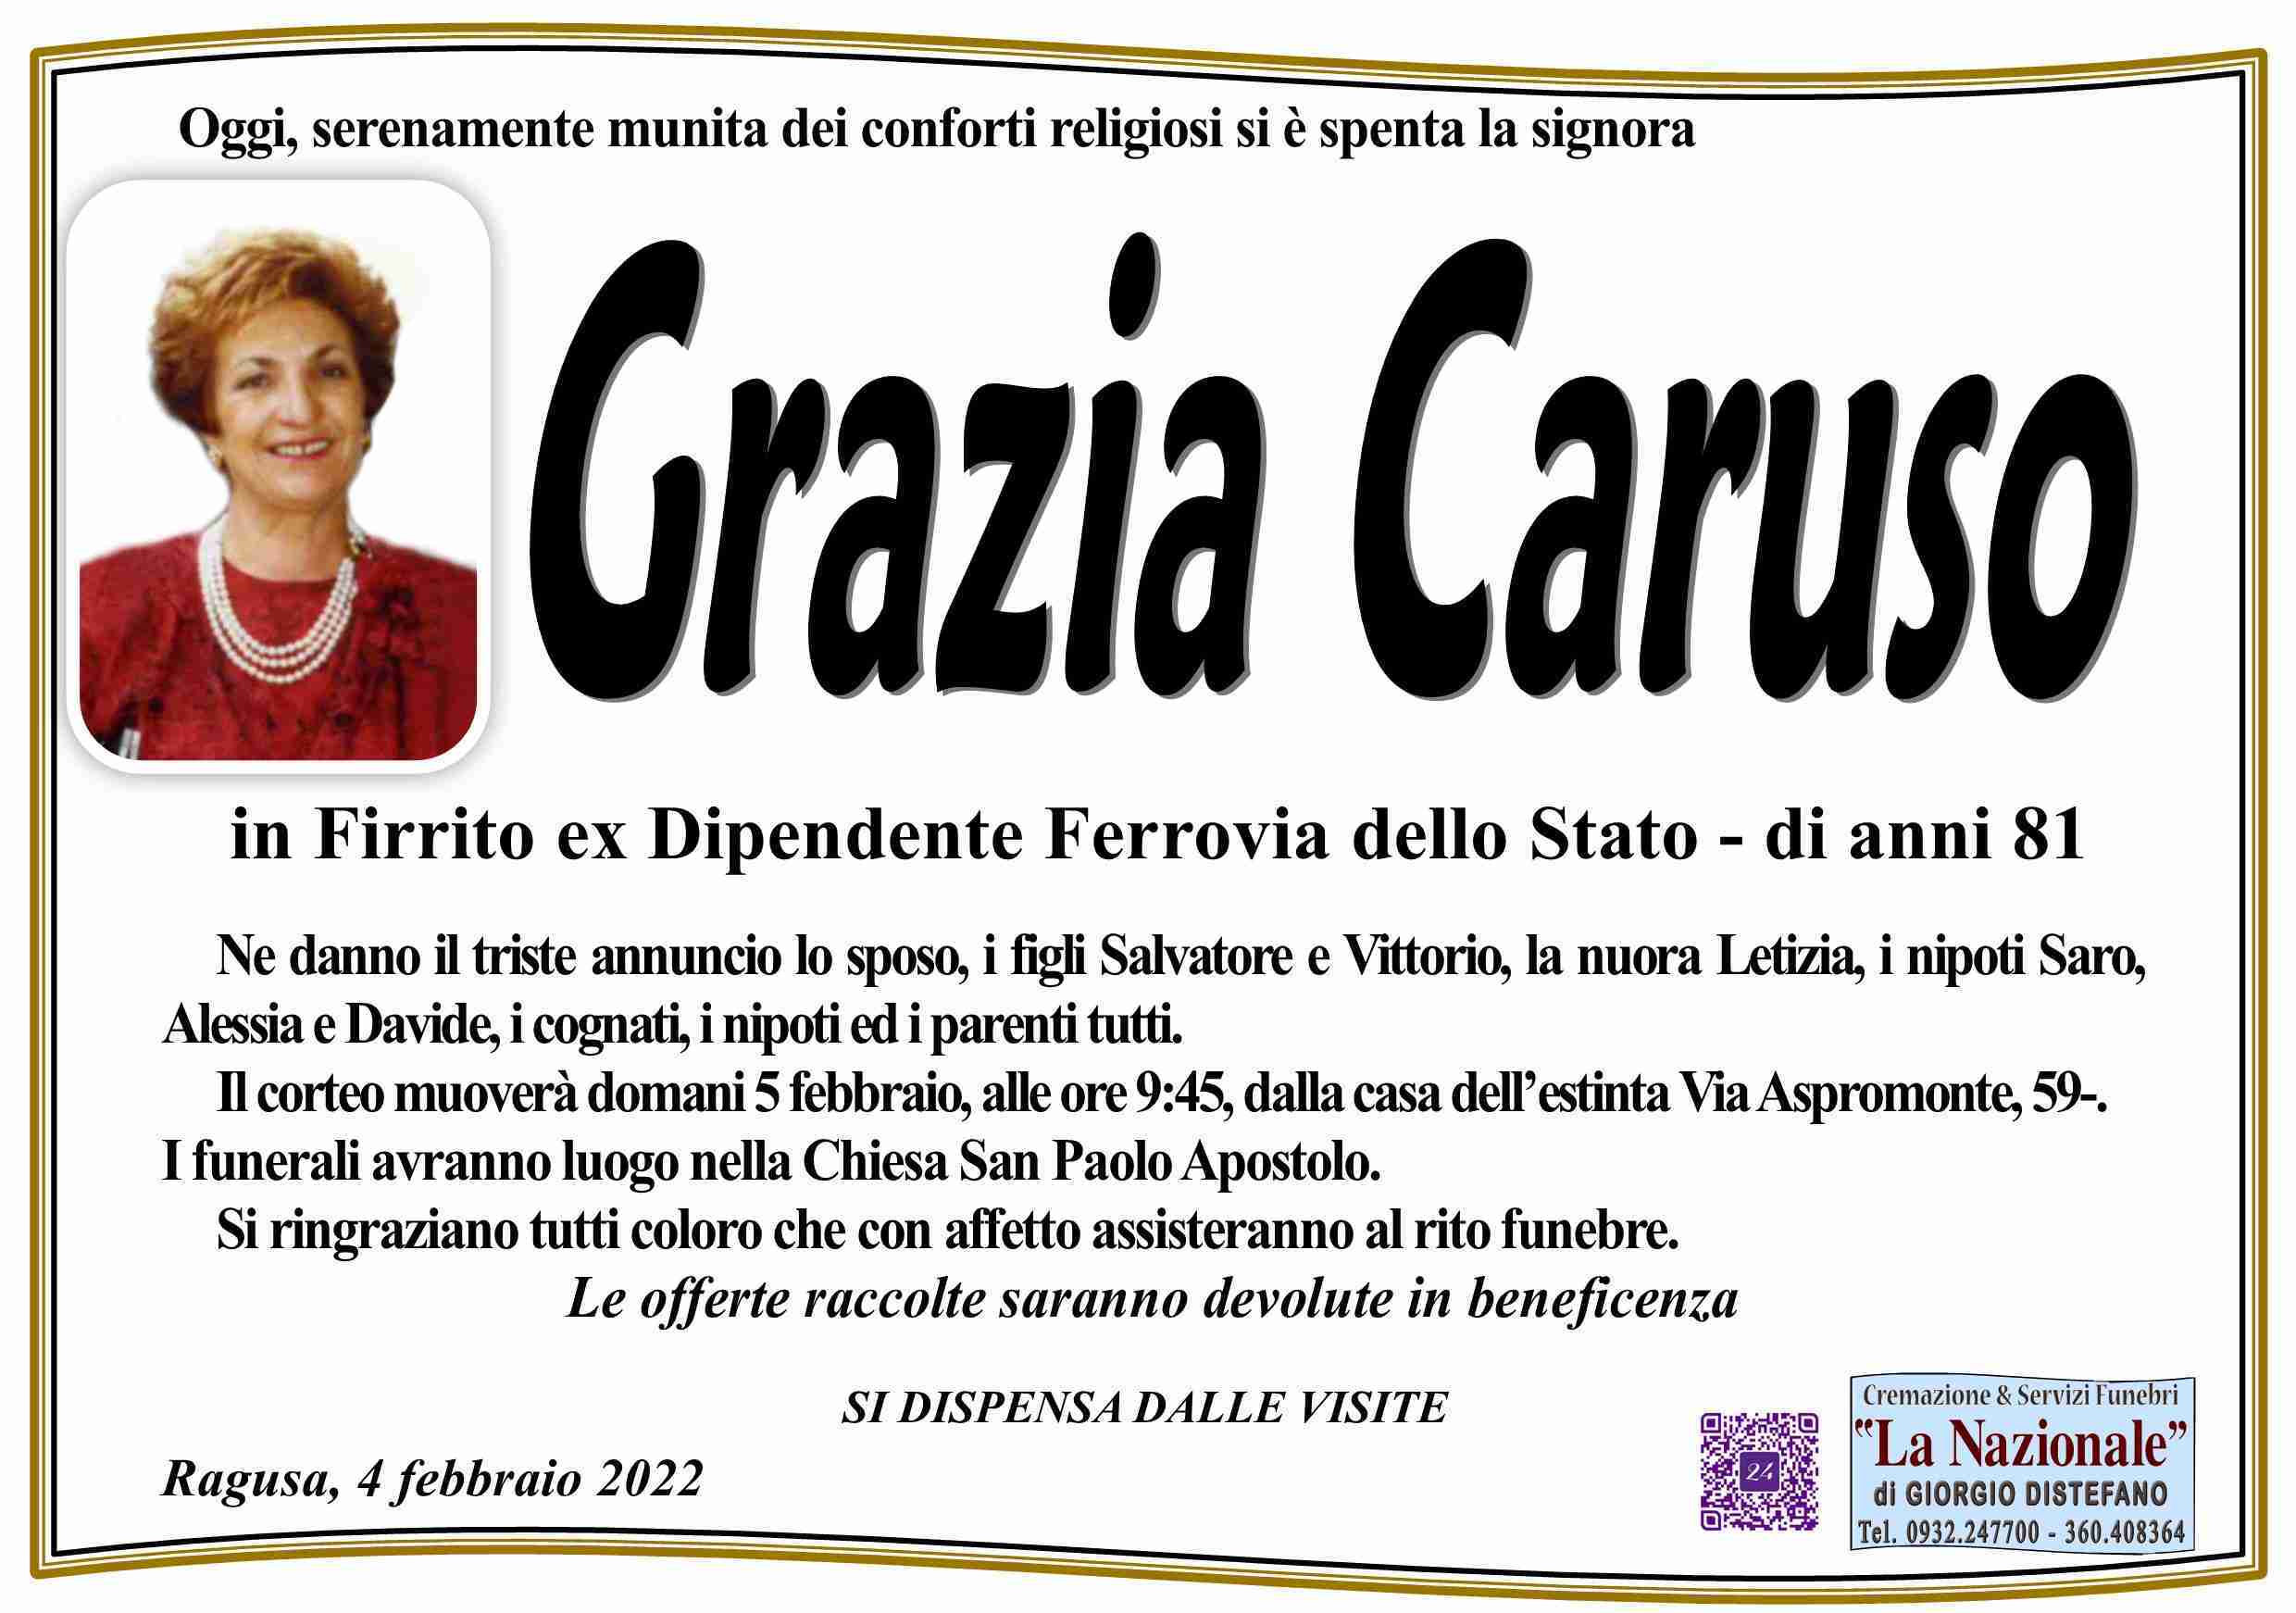 Grazia Caruso